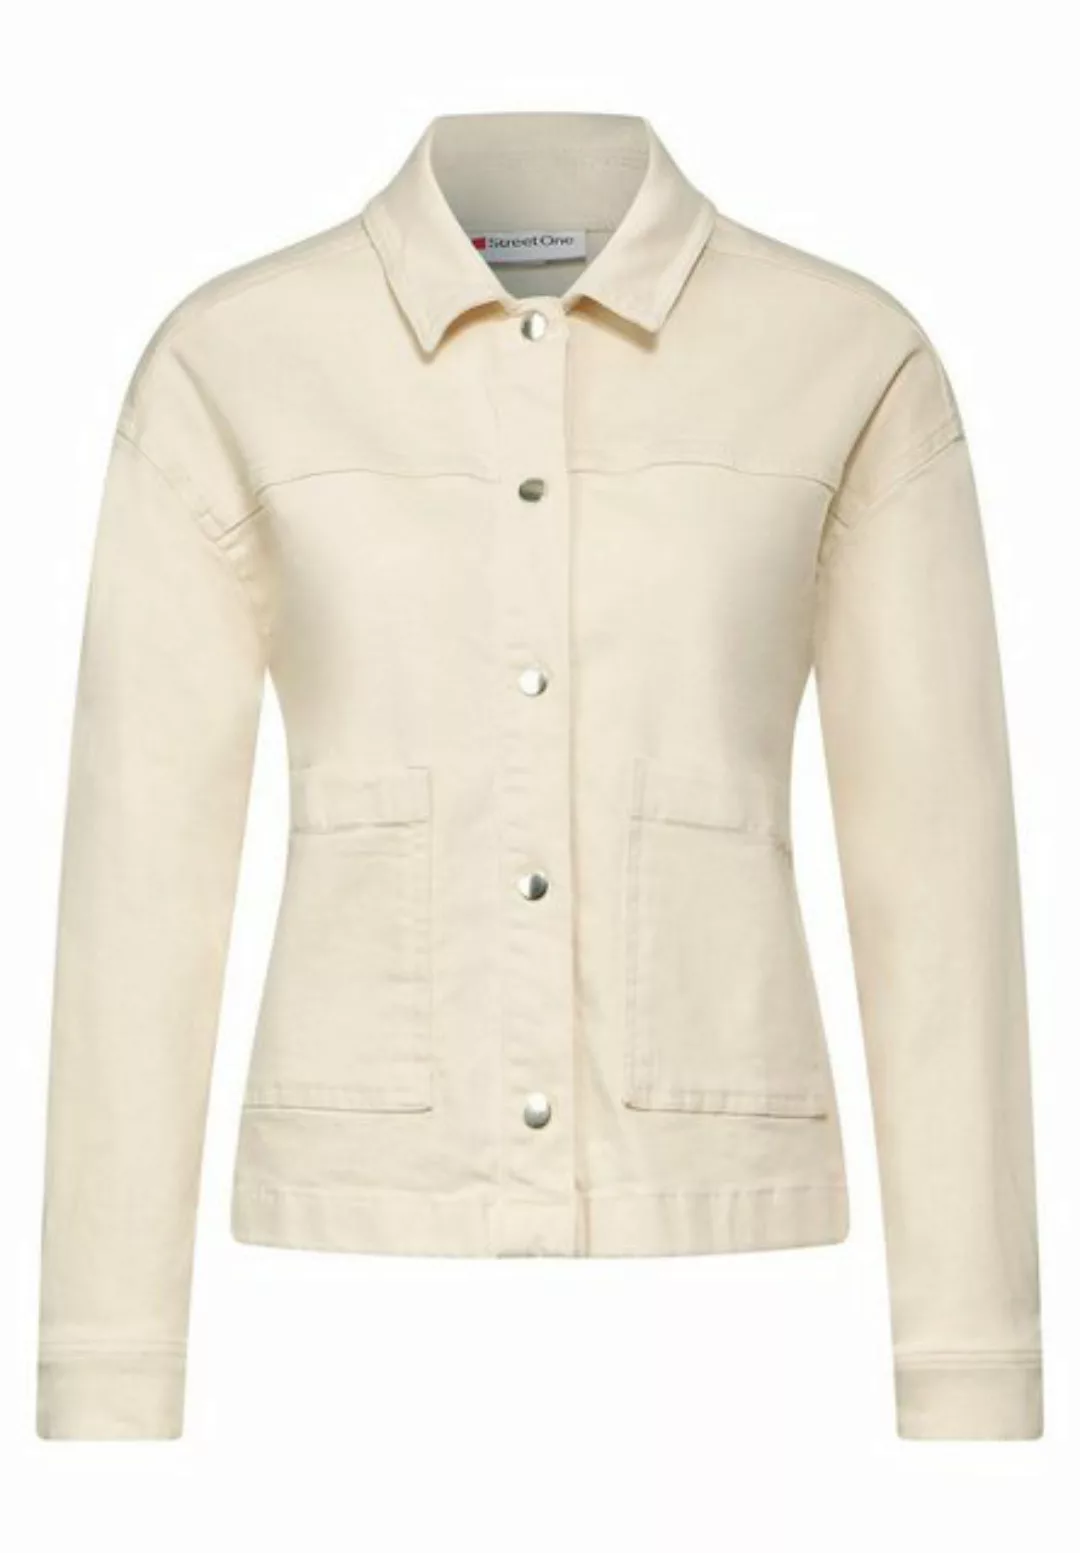 STREET ONE Outdoorjacke LTD QR Denim-Jacket,ecru, ecru washed günstig online kaufen